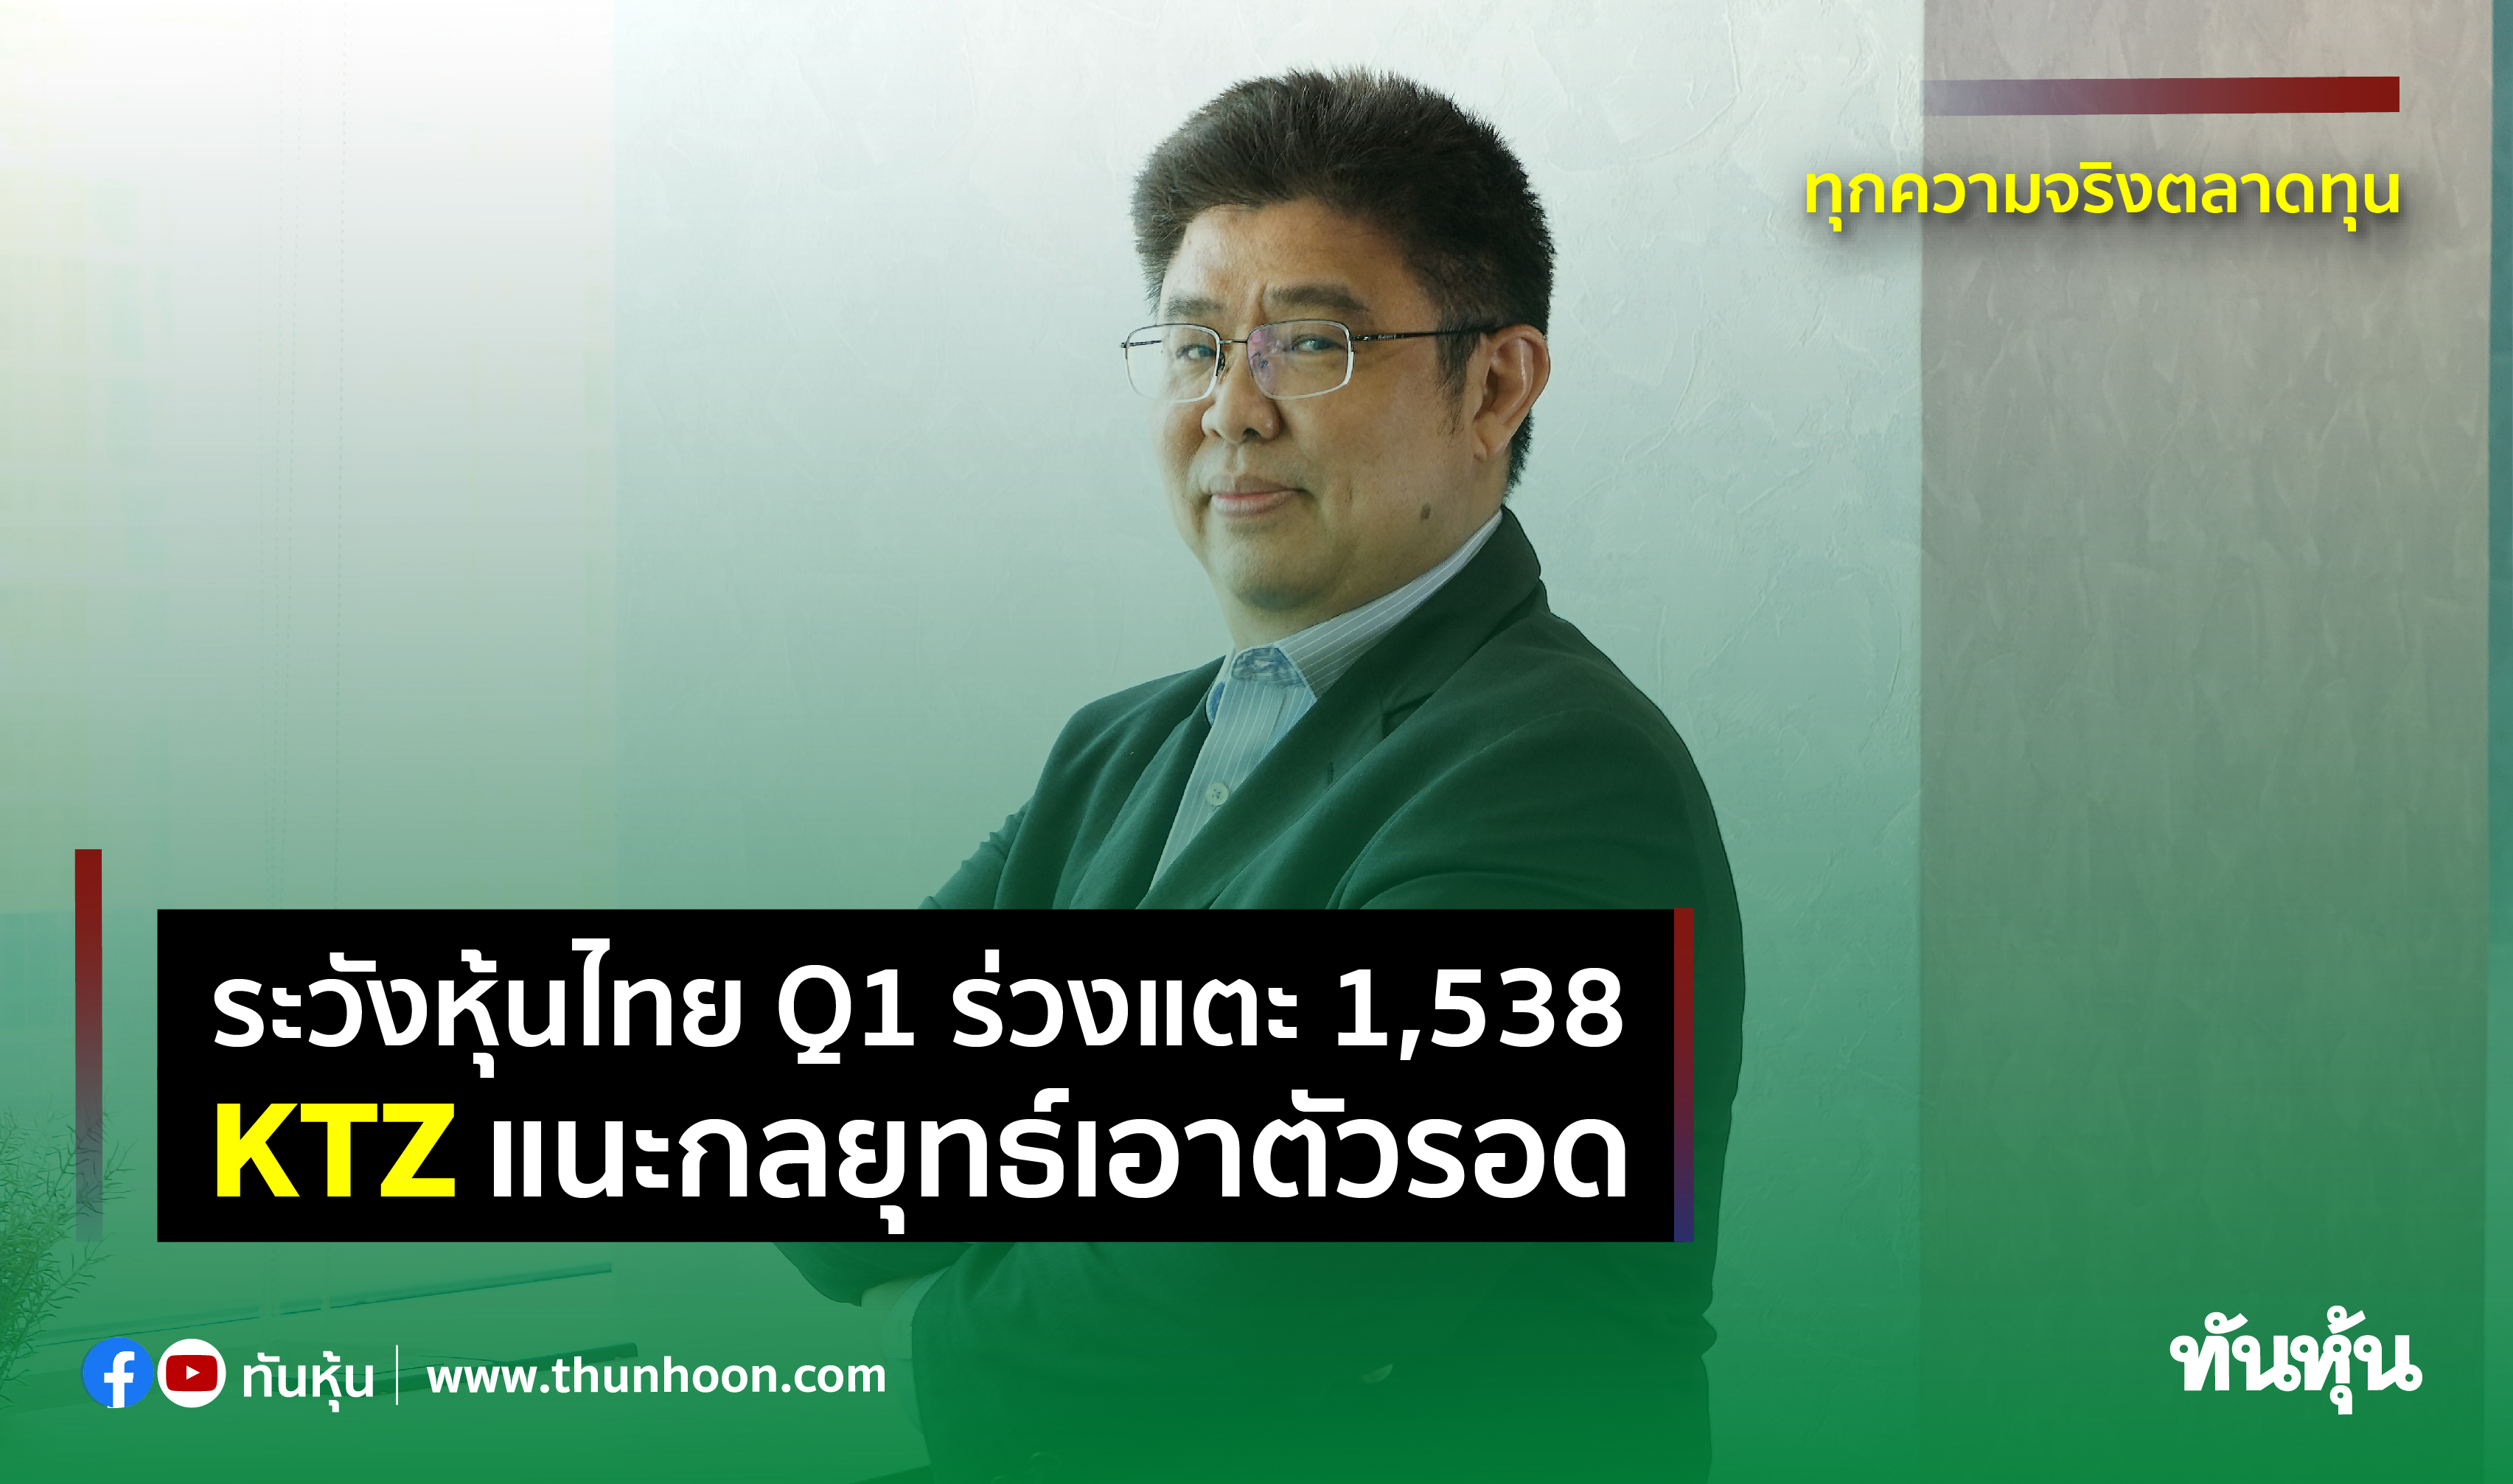 ระวังหุ้นไทย Q1 ร่วงแตะ 1,538 KTZ แนะกลยุทธ์เอาตัวรอด